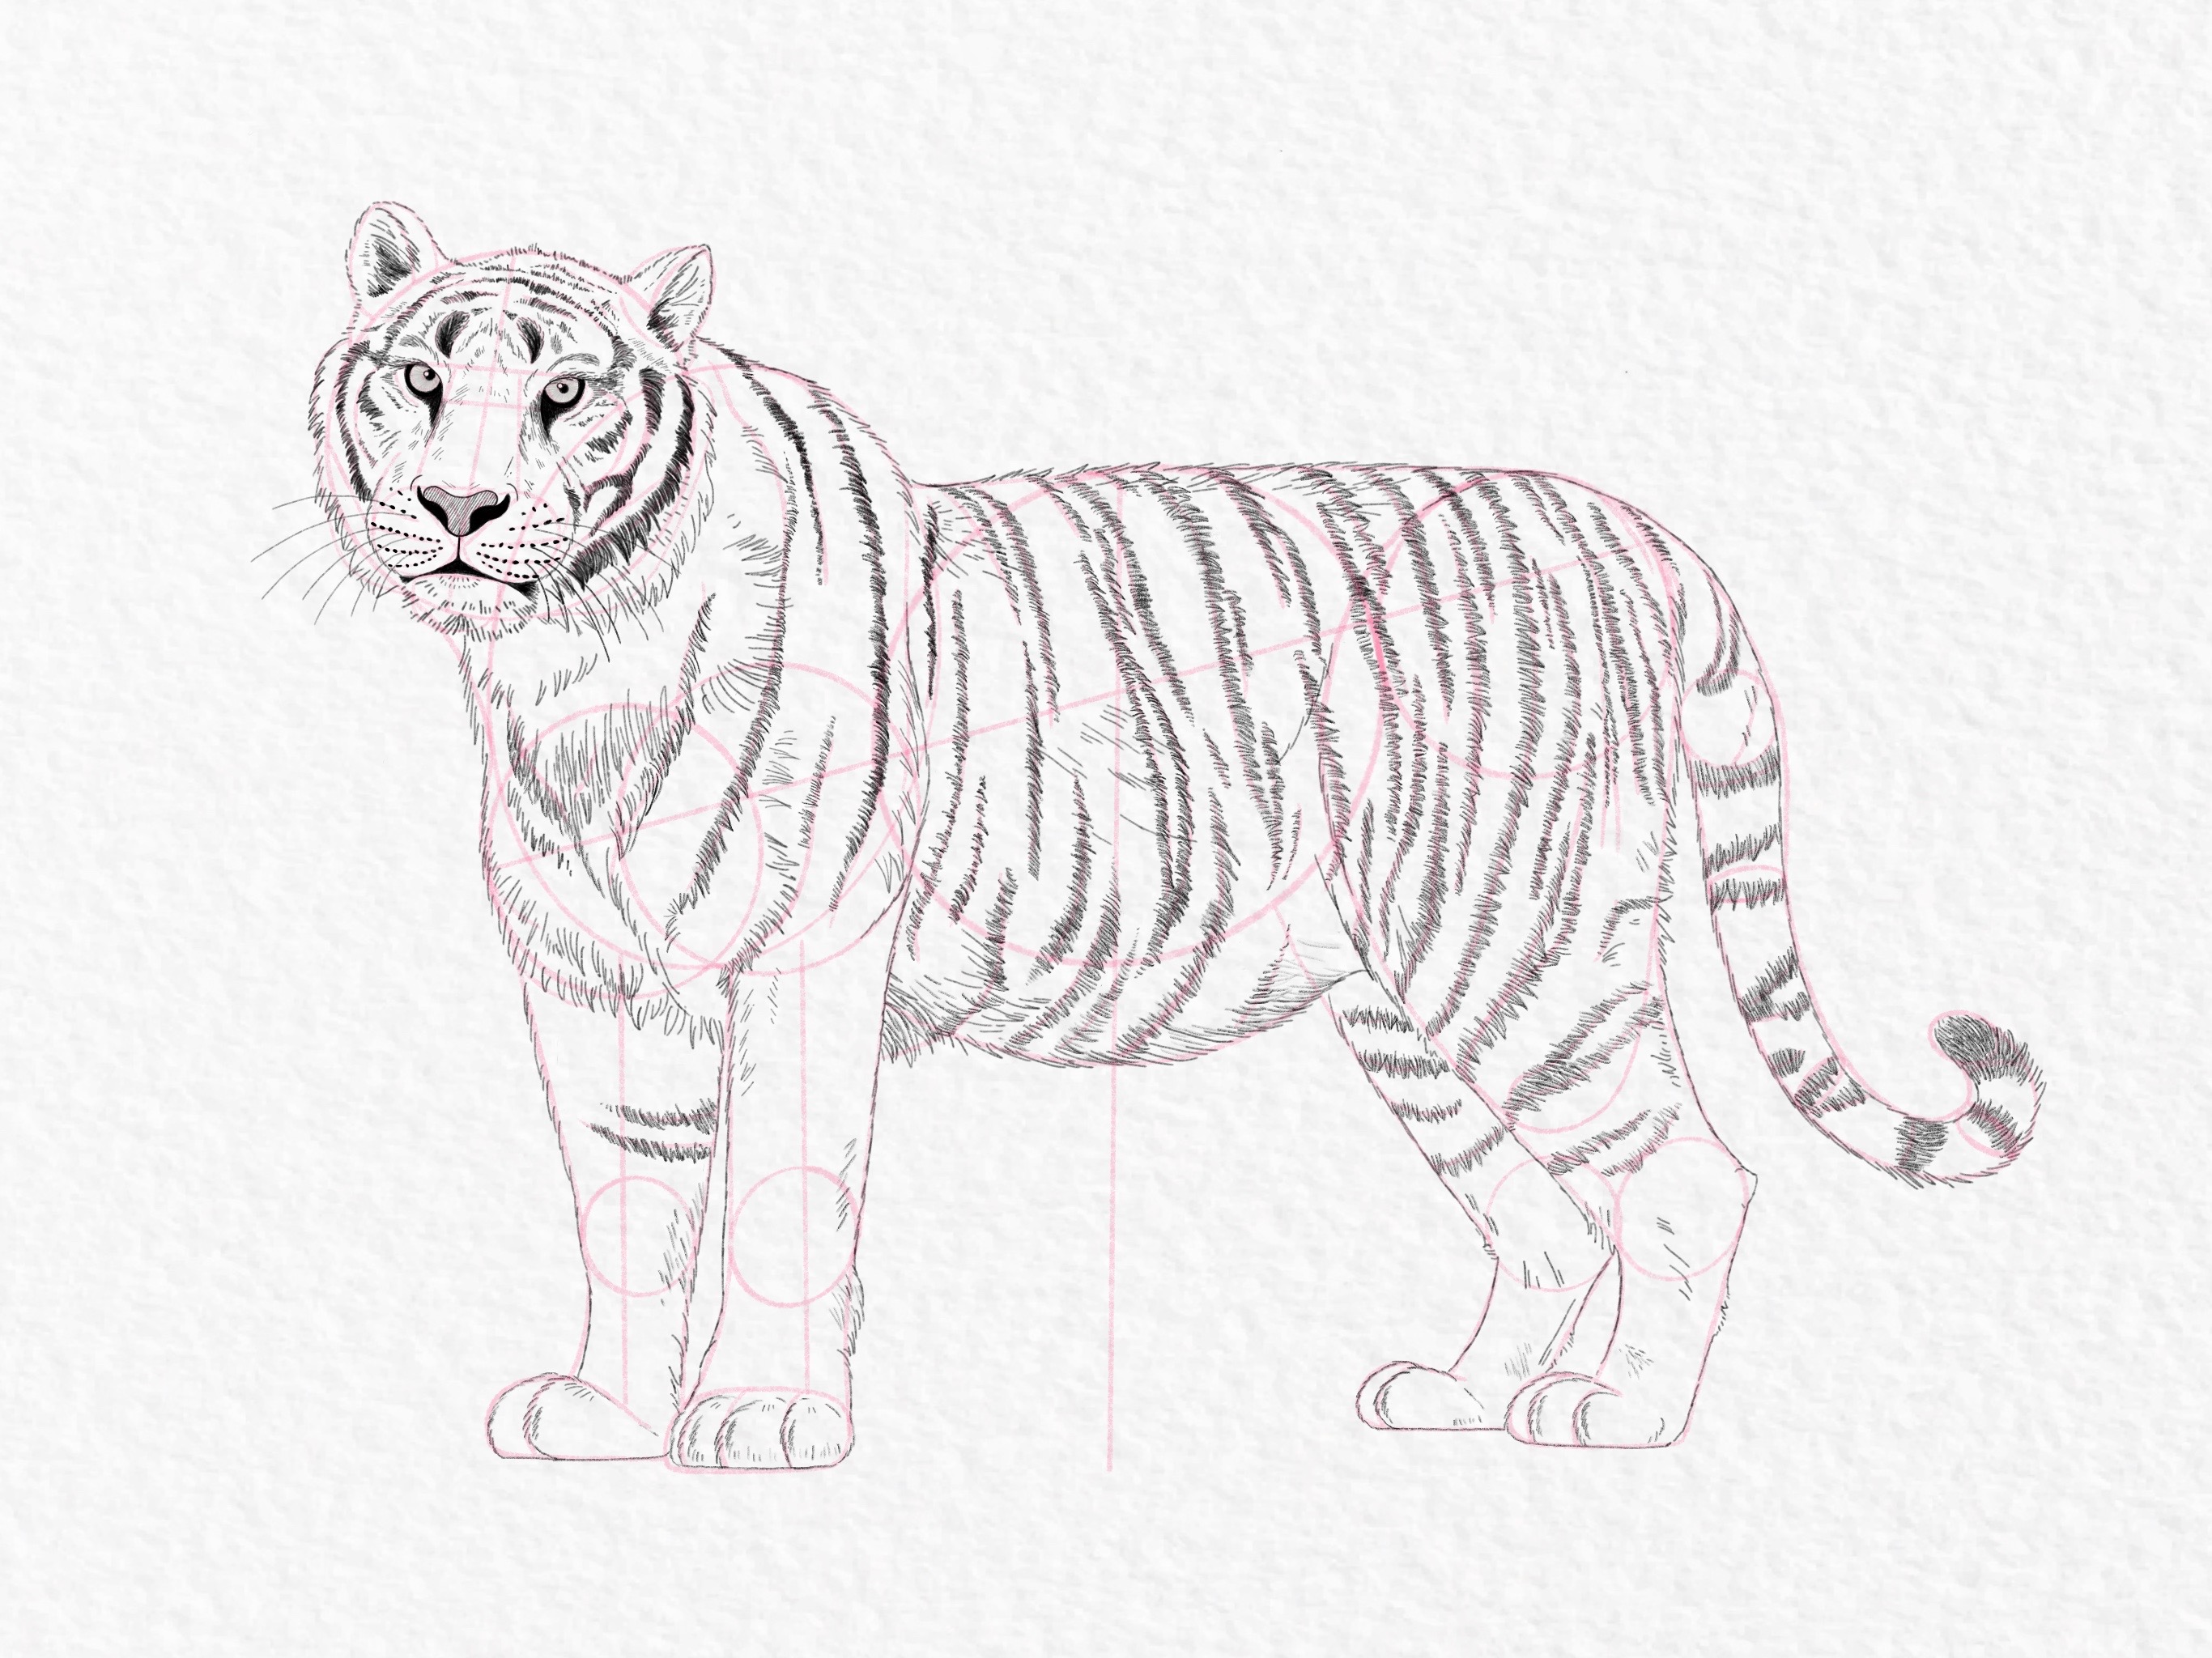 Tiger drawings | Tiger cartoon drawing, Tiger drawing, Tiger art drawing